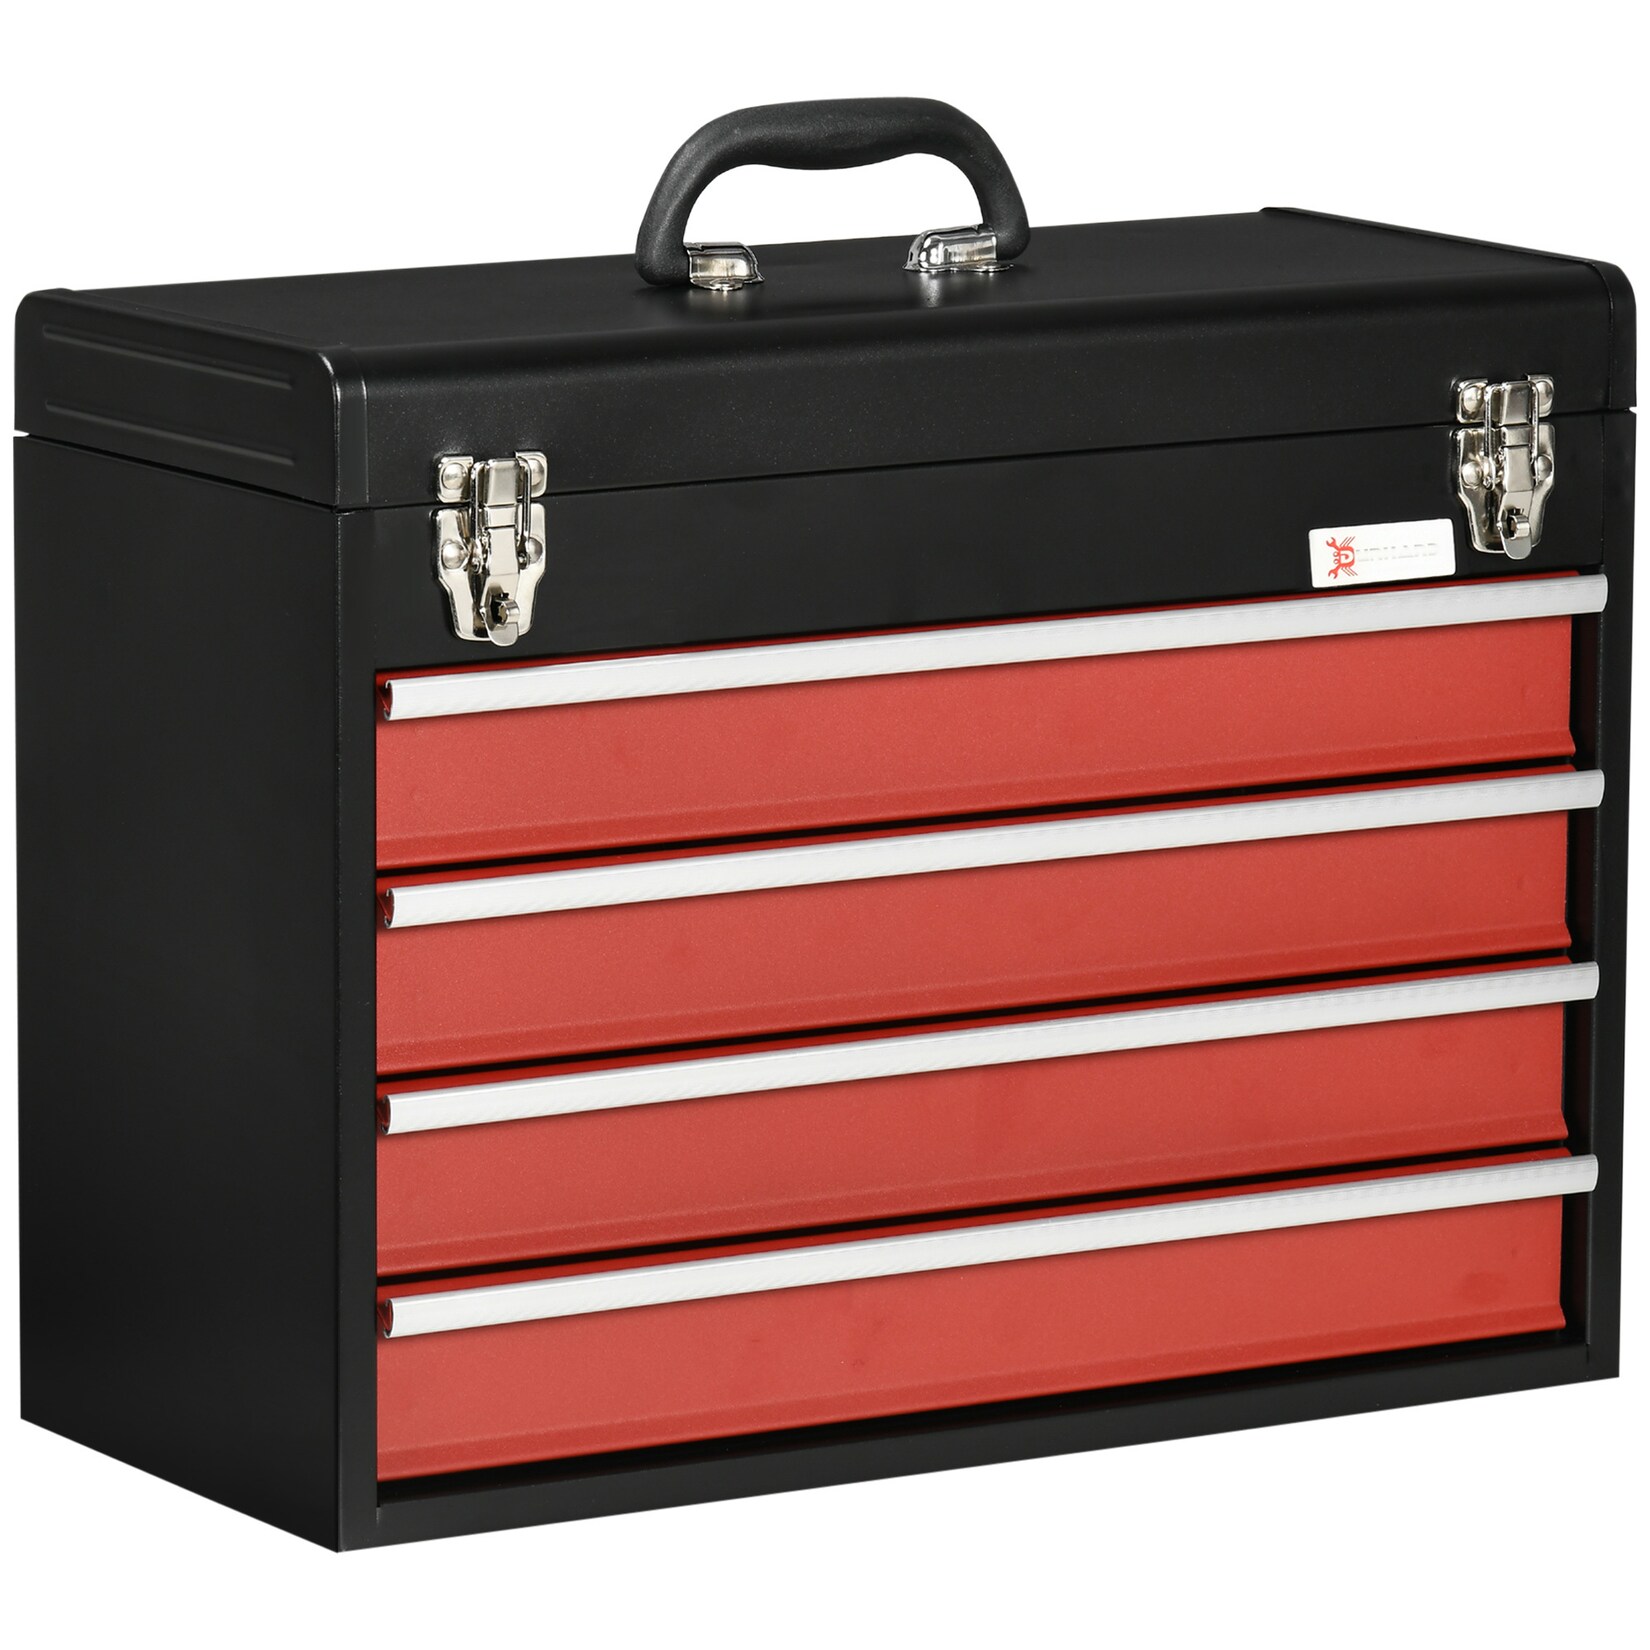 DURHAND Werkzeugkiste mit 4 Schubladen schwarz, rot 51L x 22B x 39,5H cm